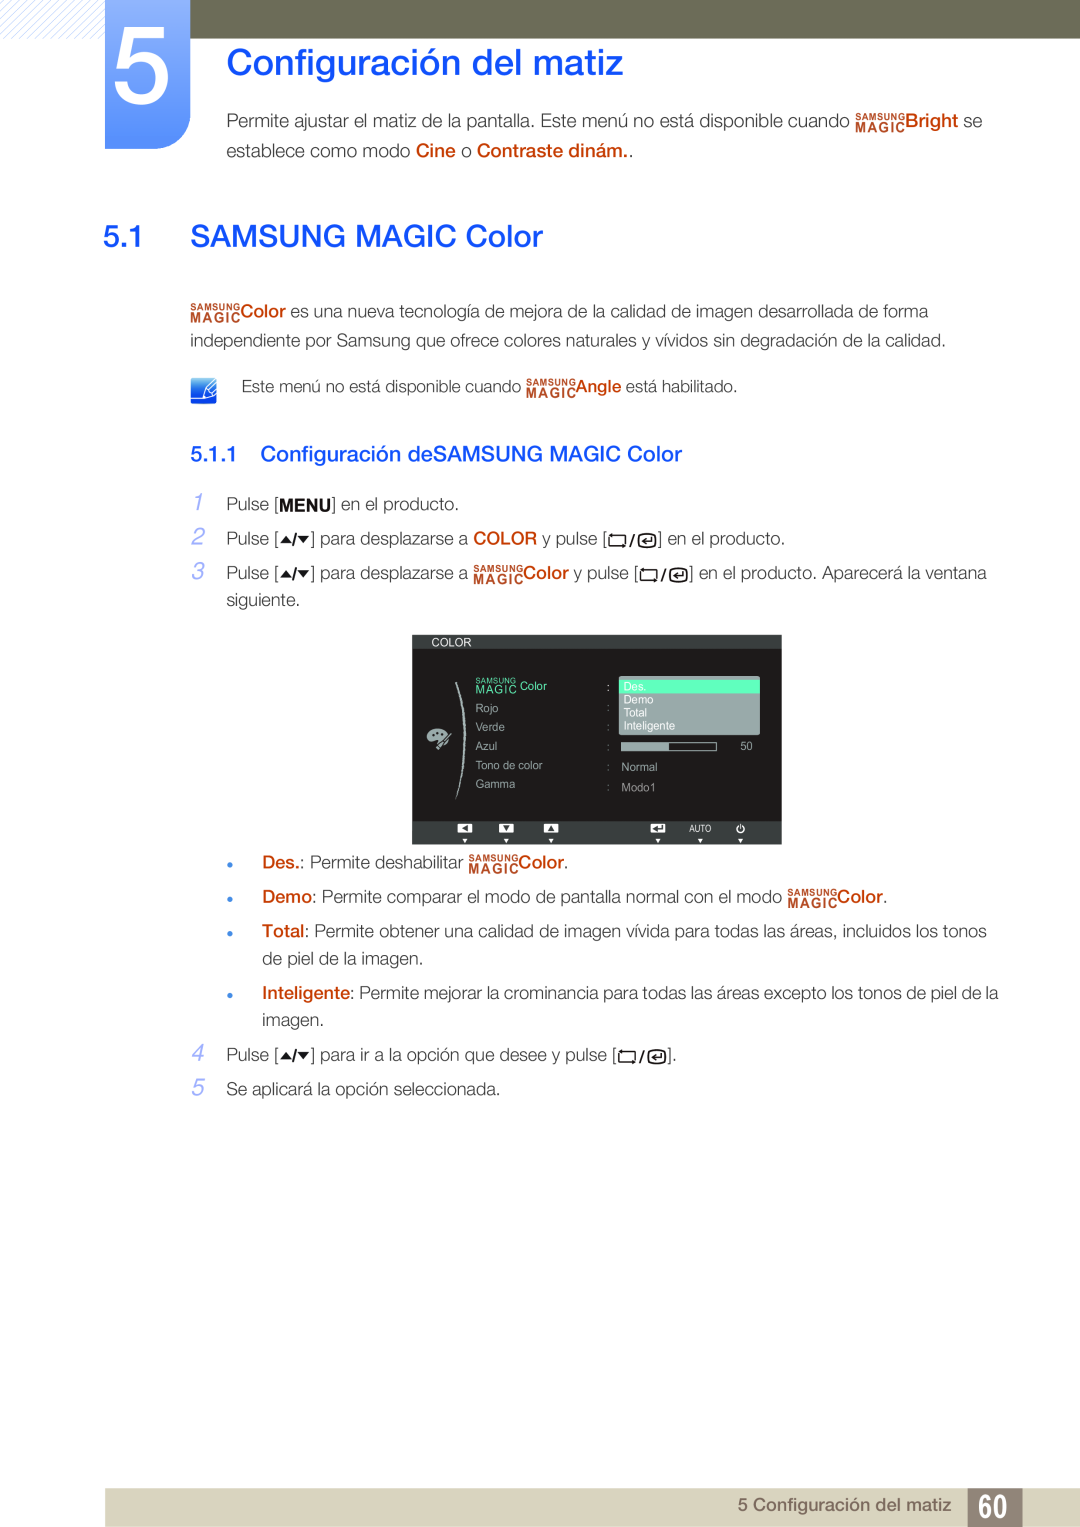 Samsung LF24TSWTBDN/EN, LF19TSWTBDN/EN, LF22TSWTBDN/EN Configuración del matiz, Configuración deSAMSUNG MAGIC Color 